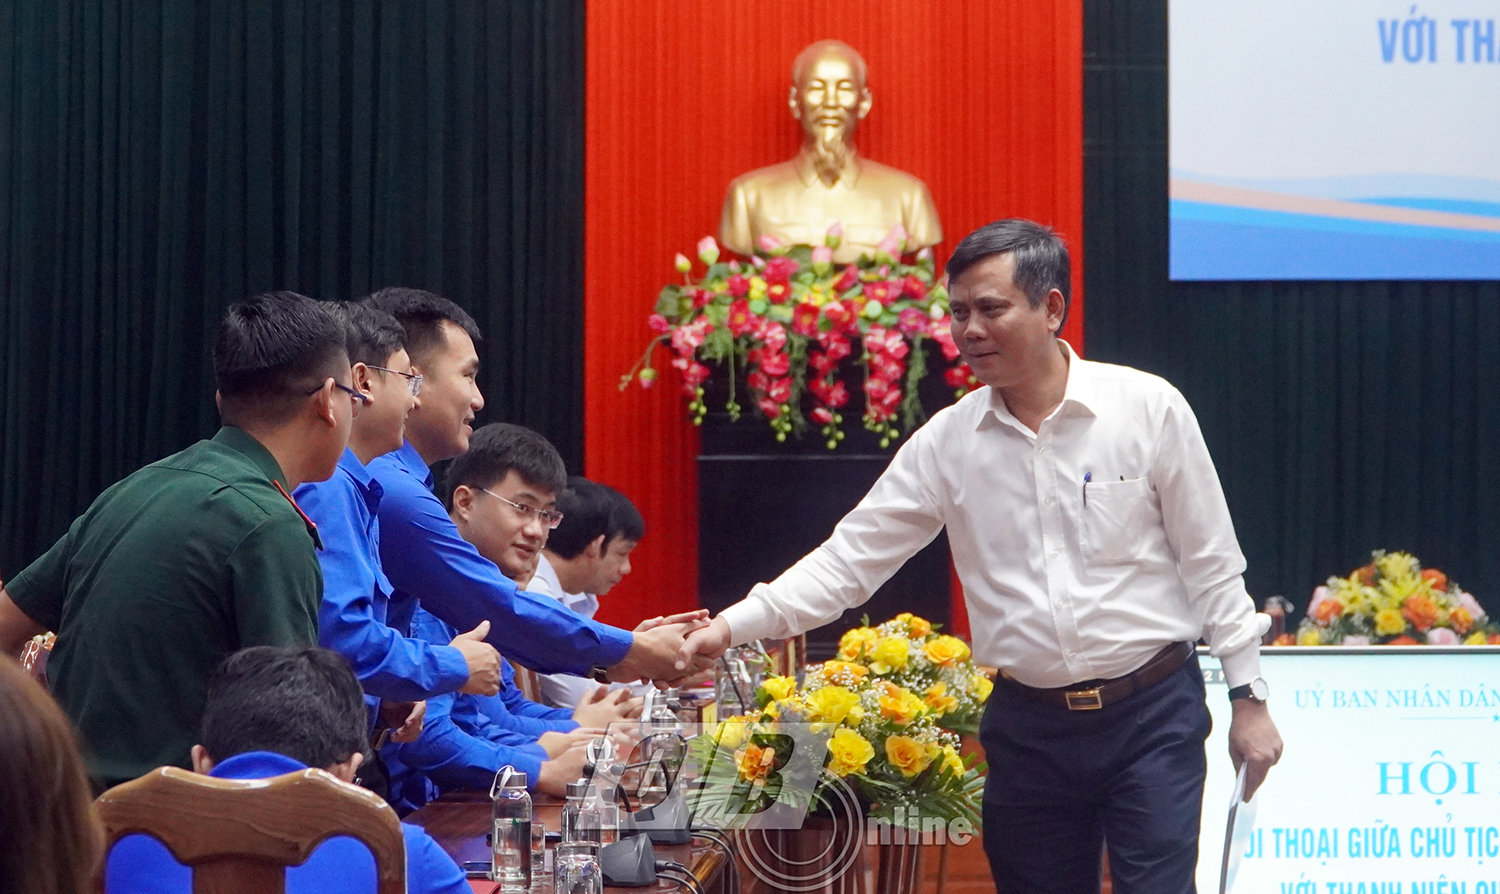 Đồng chí Chủ tịch UBND tỉnh Trần Thắng trò chuyện với thanh niên